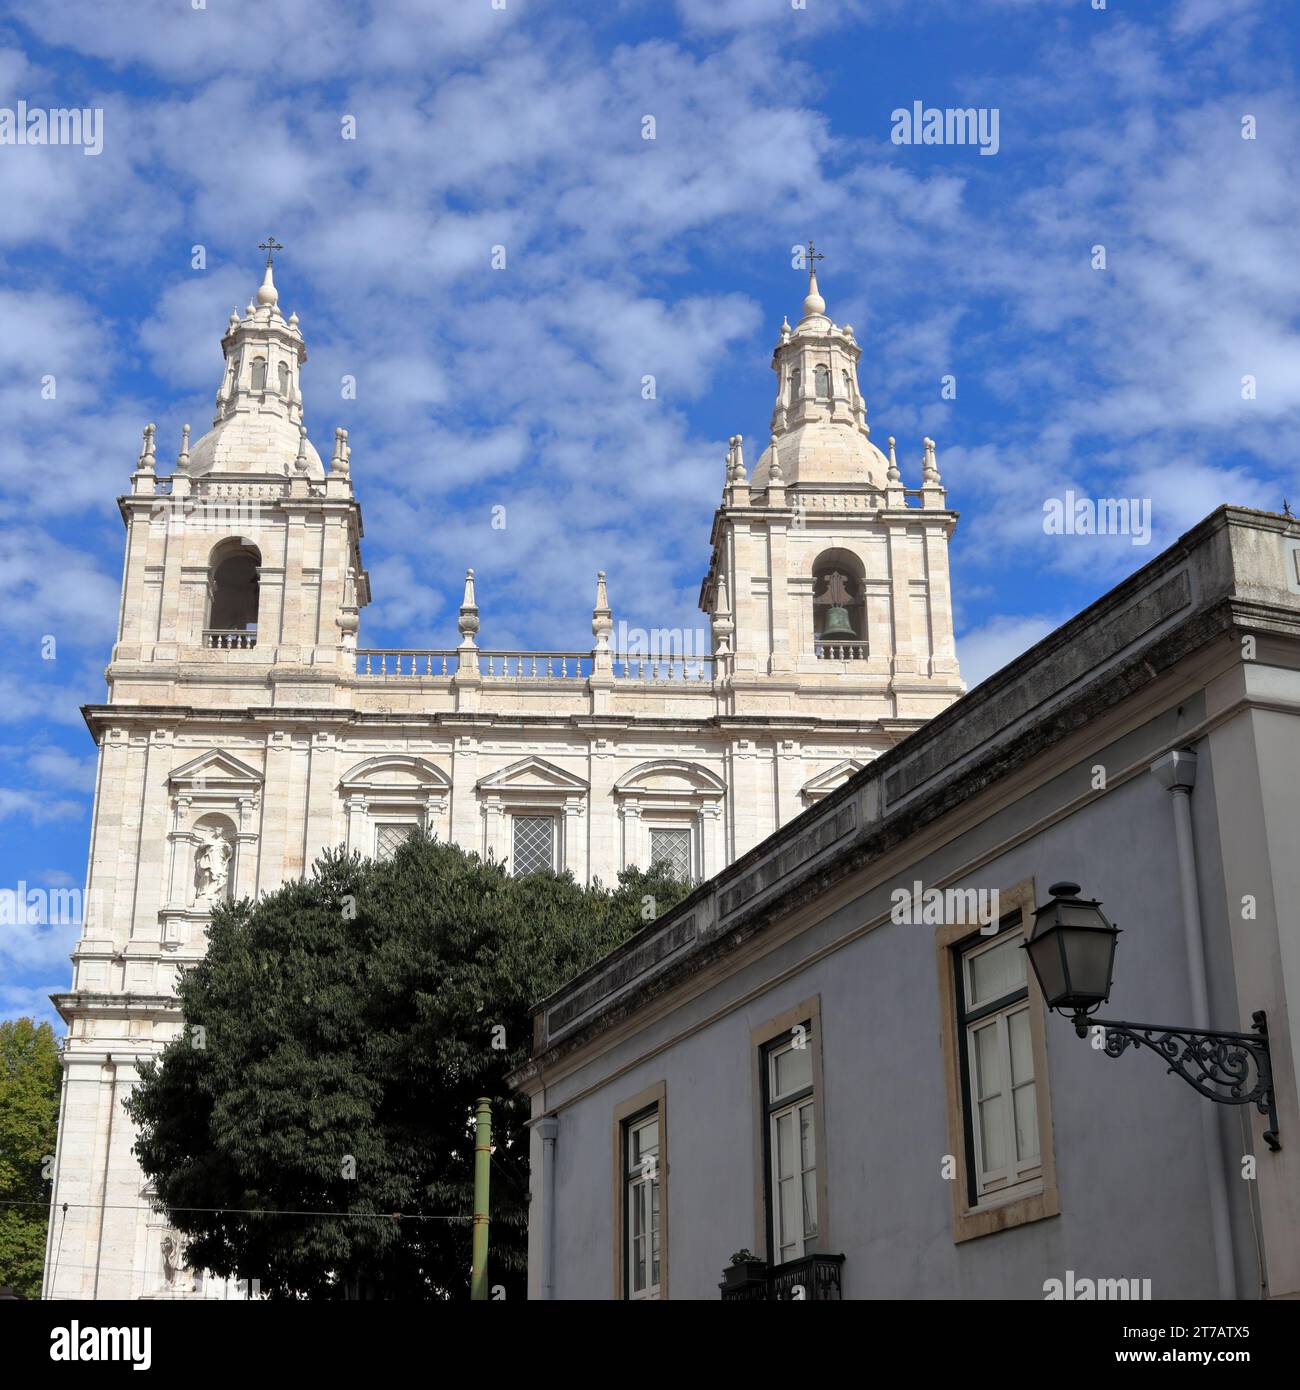 La chiesa e il monastero di São Vicente de Fora, una chiesa e monastero del XVII secolo nella città di Lisbona, Portogallo Foto Stock